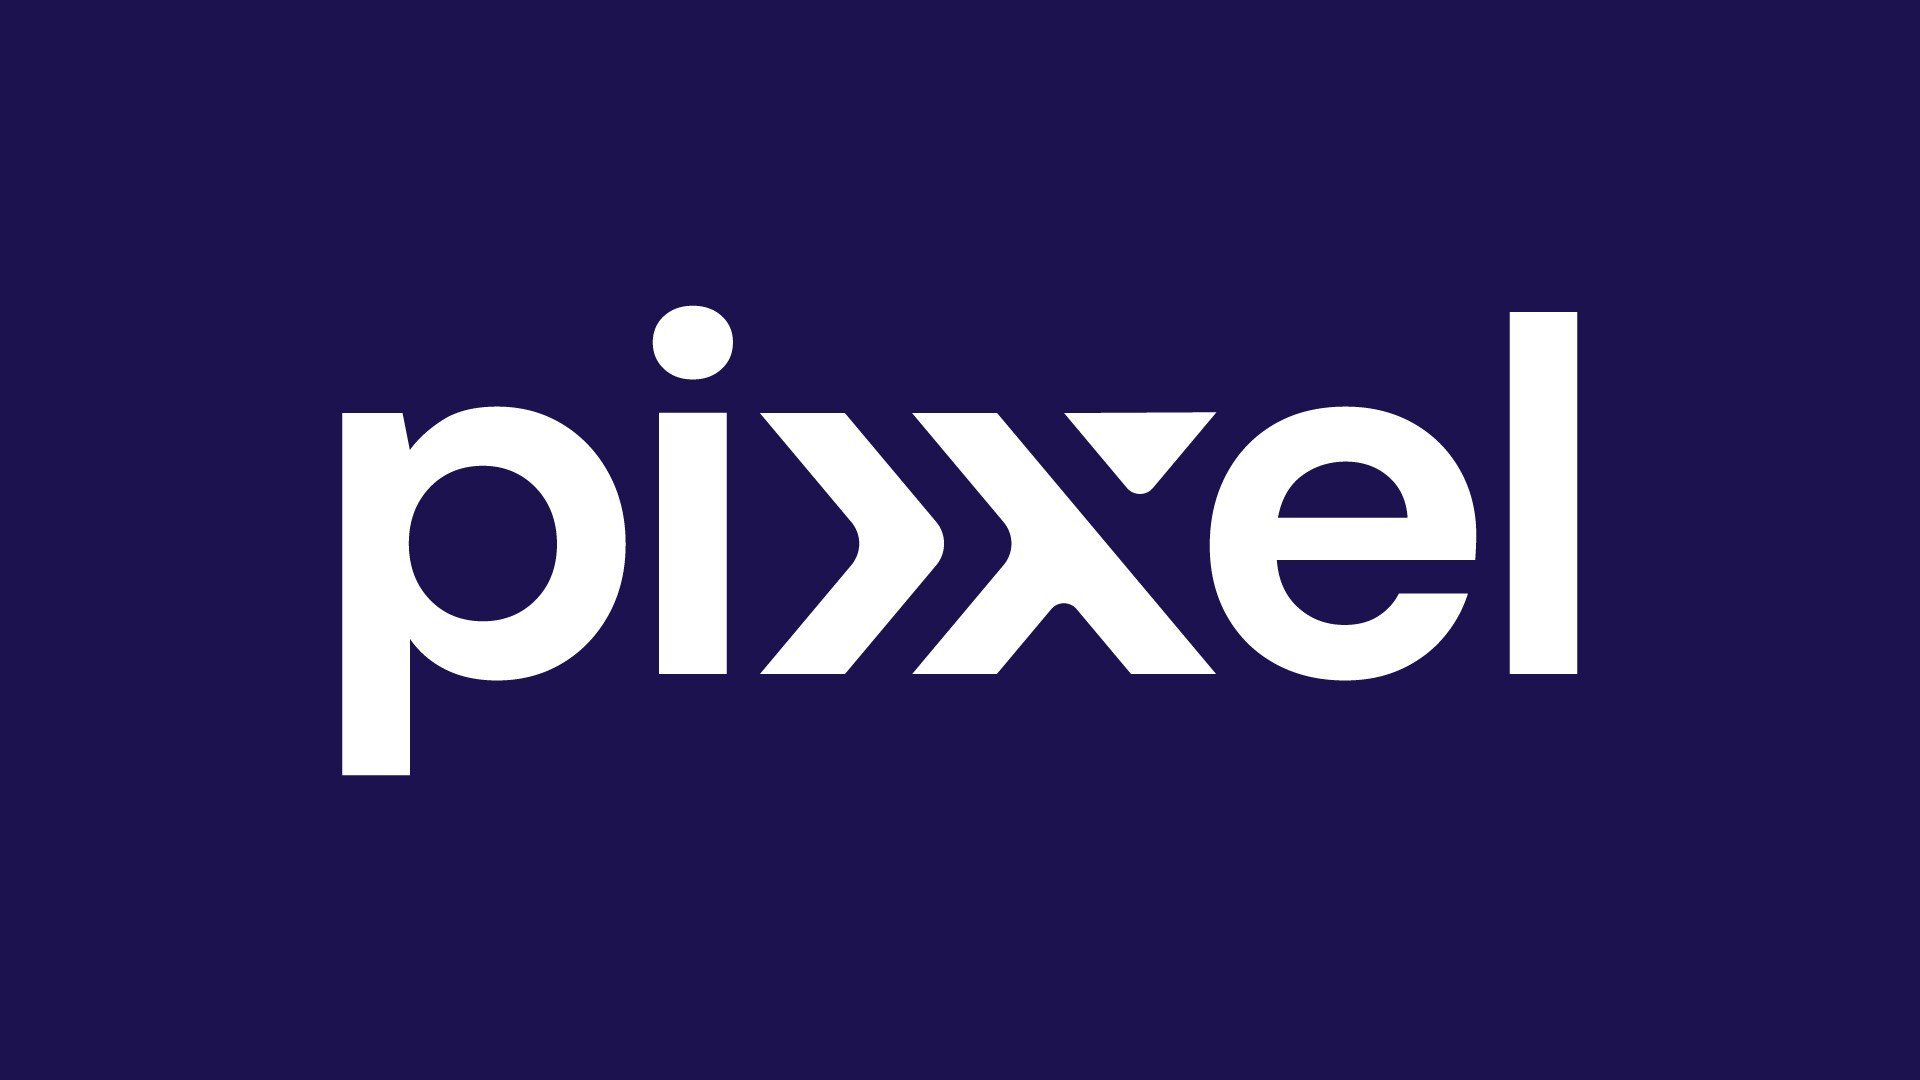 Pixxel news